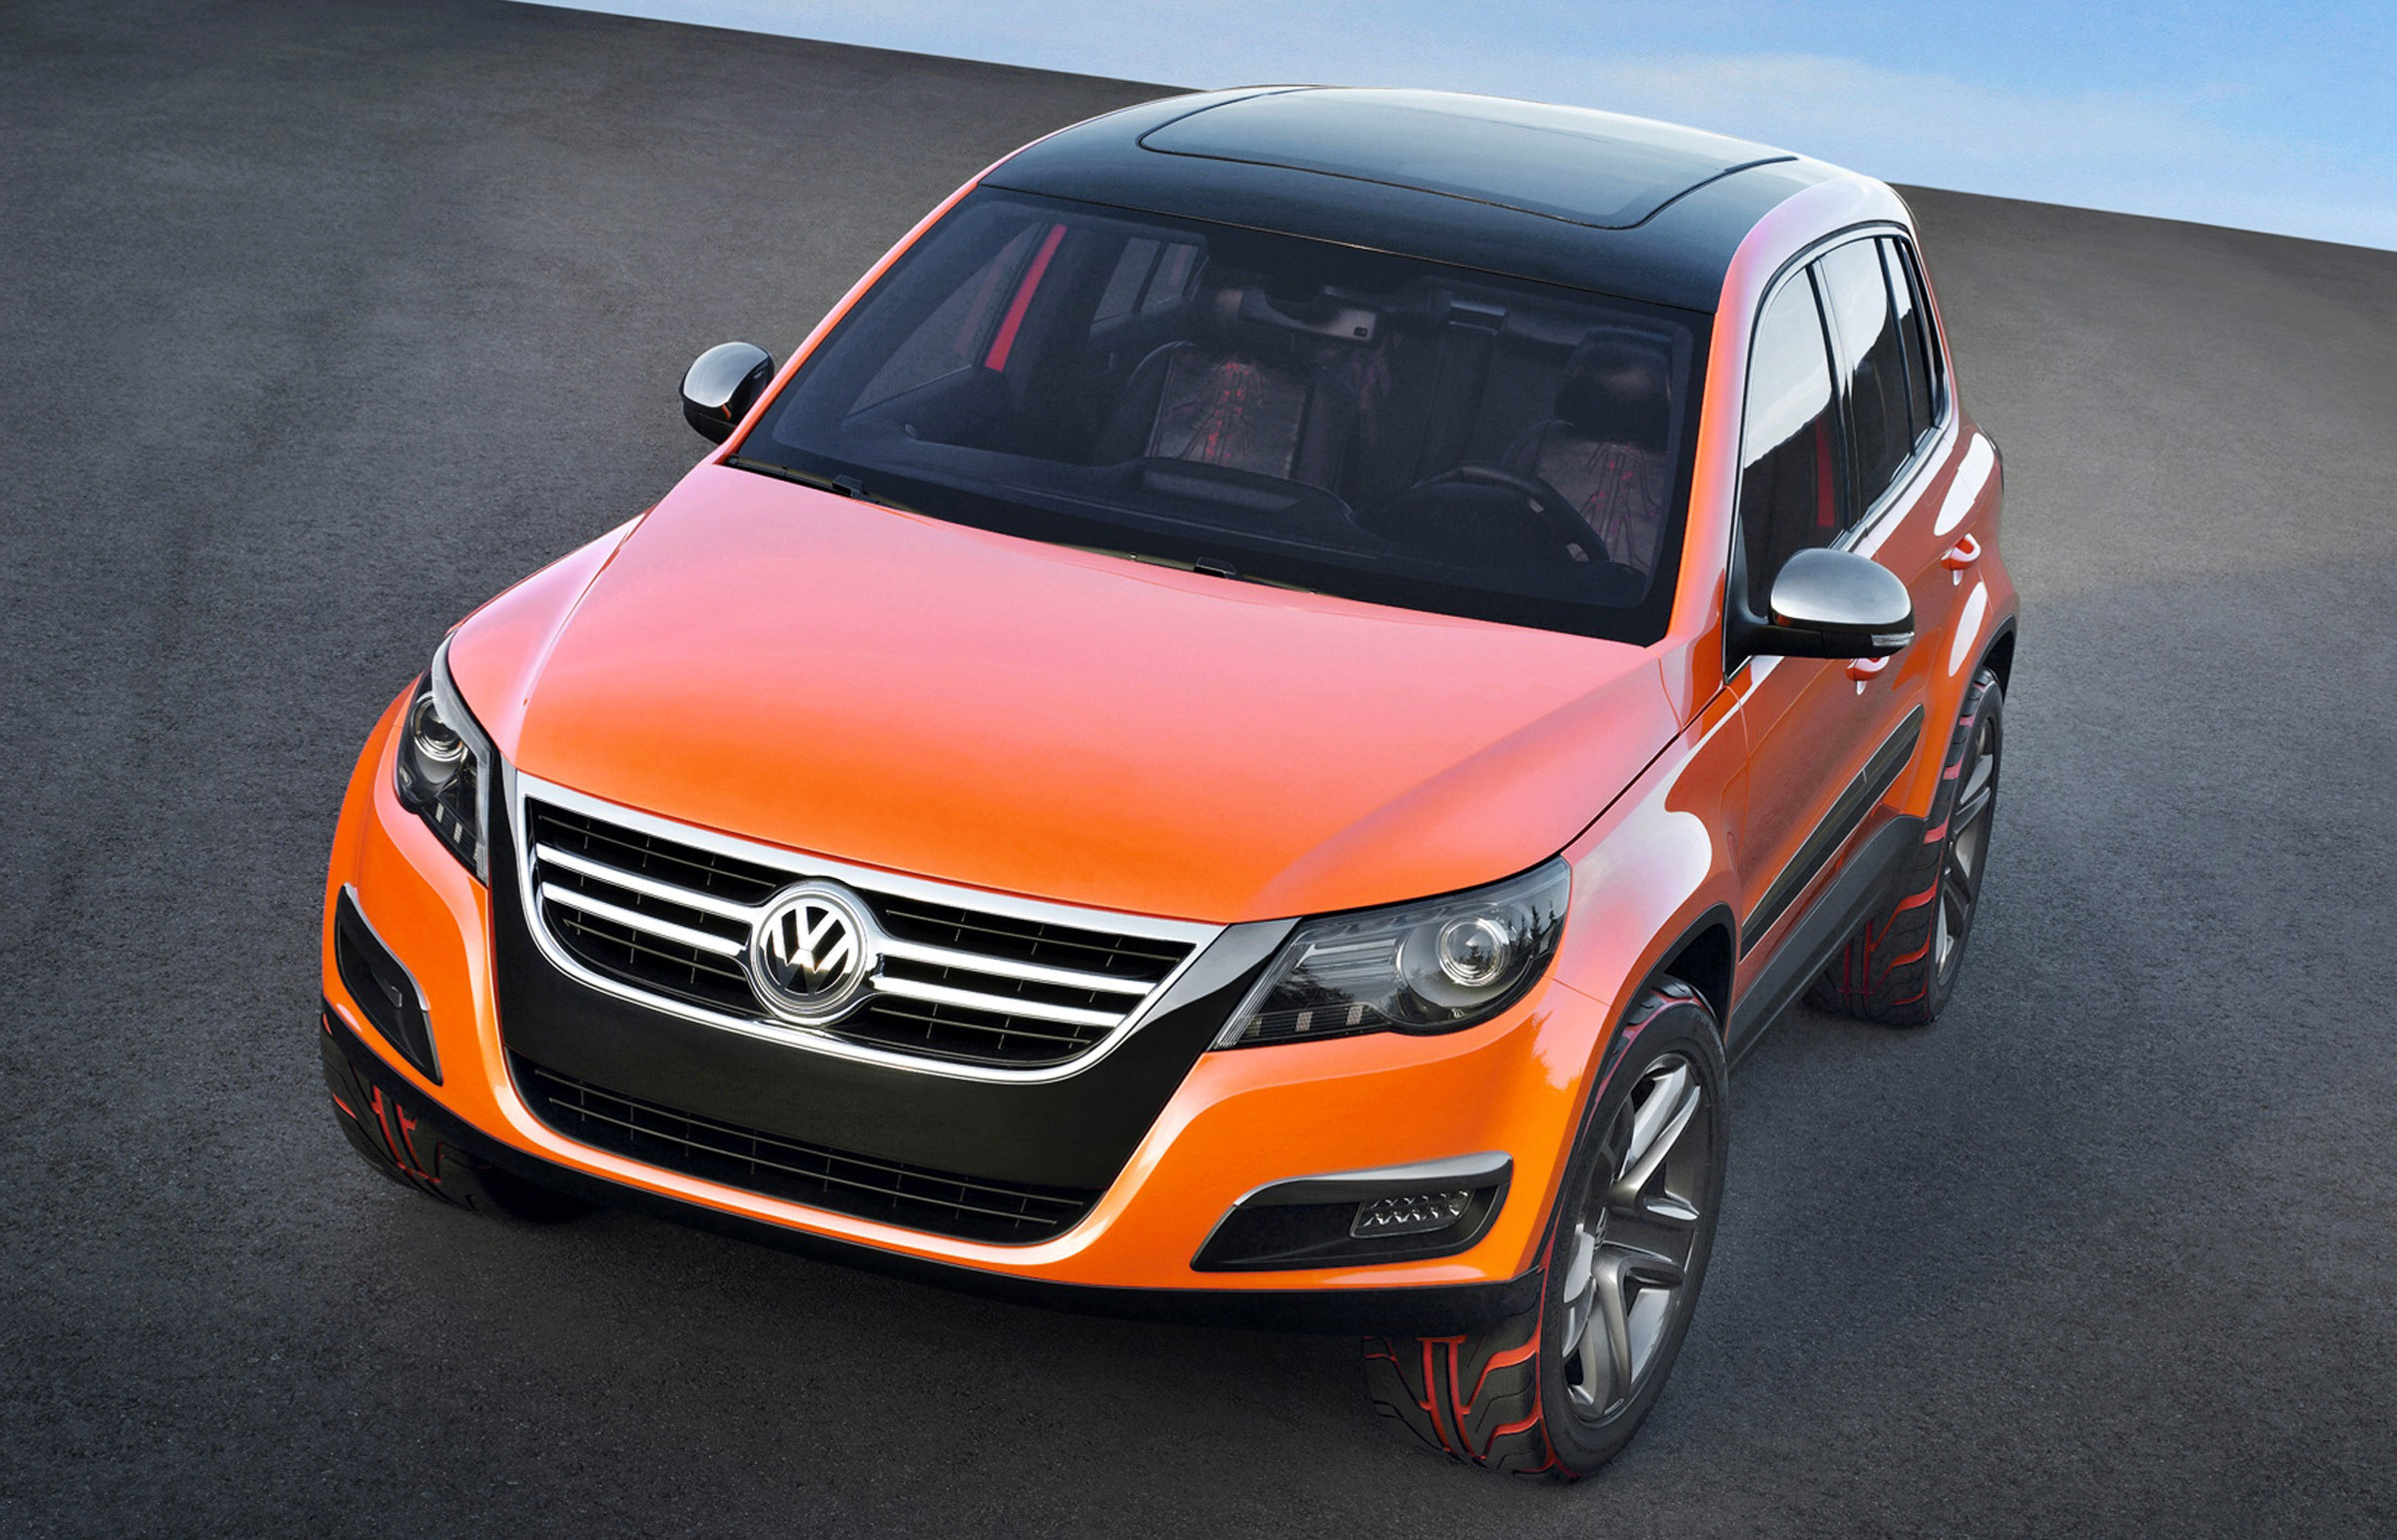 Volkswagen Concept Tiguan